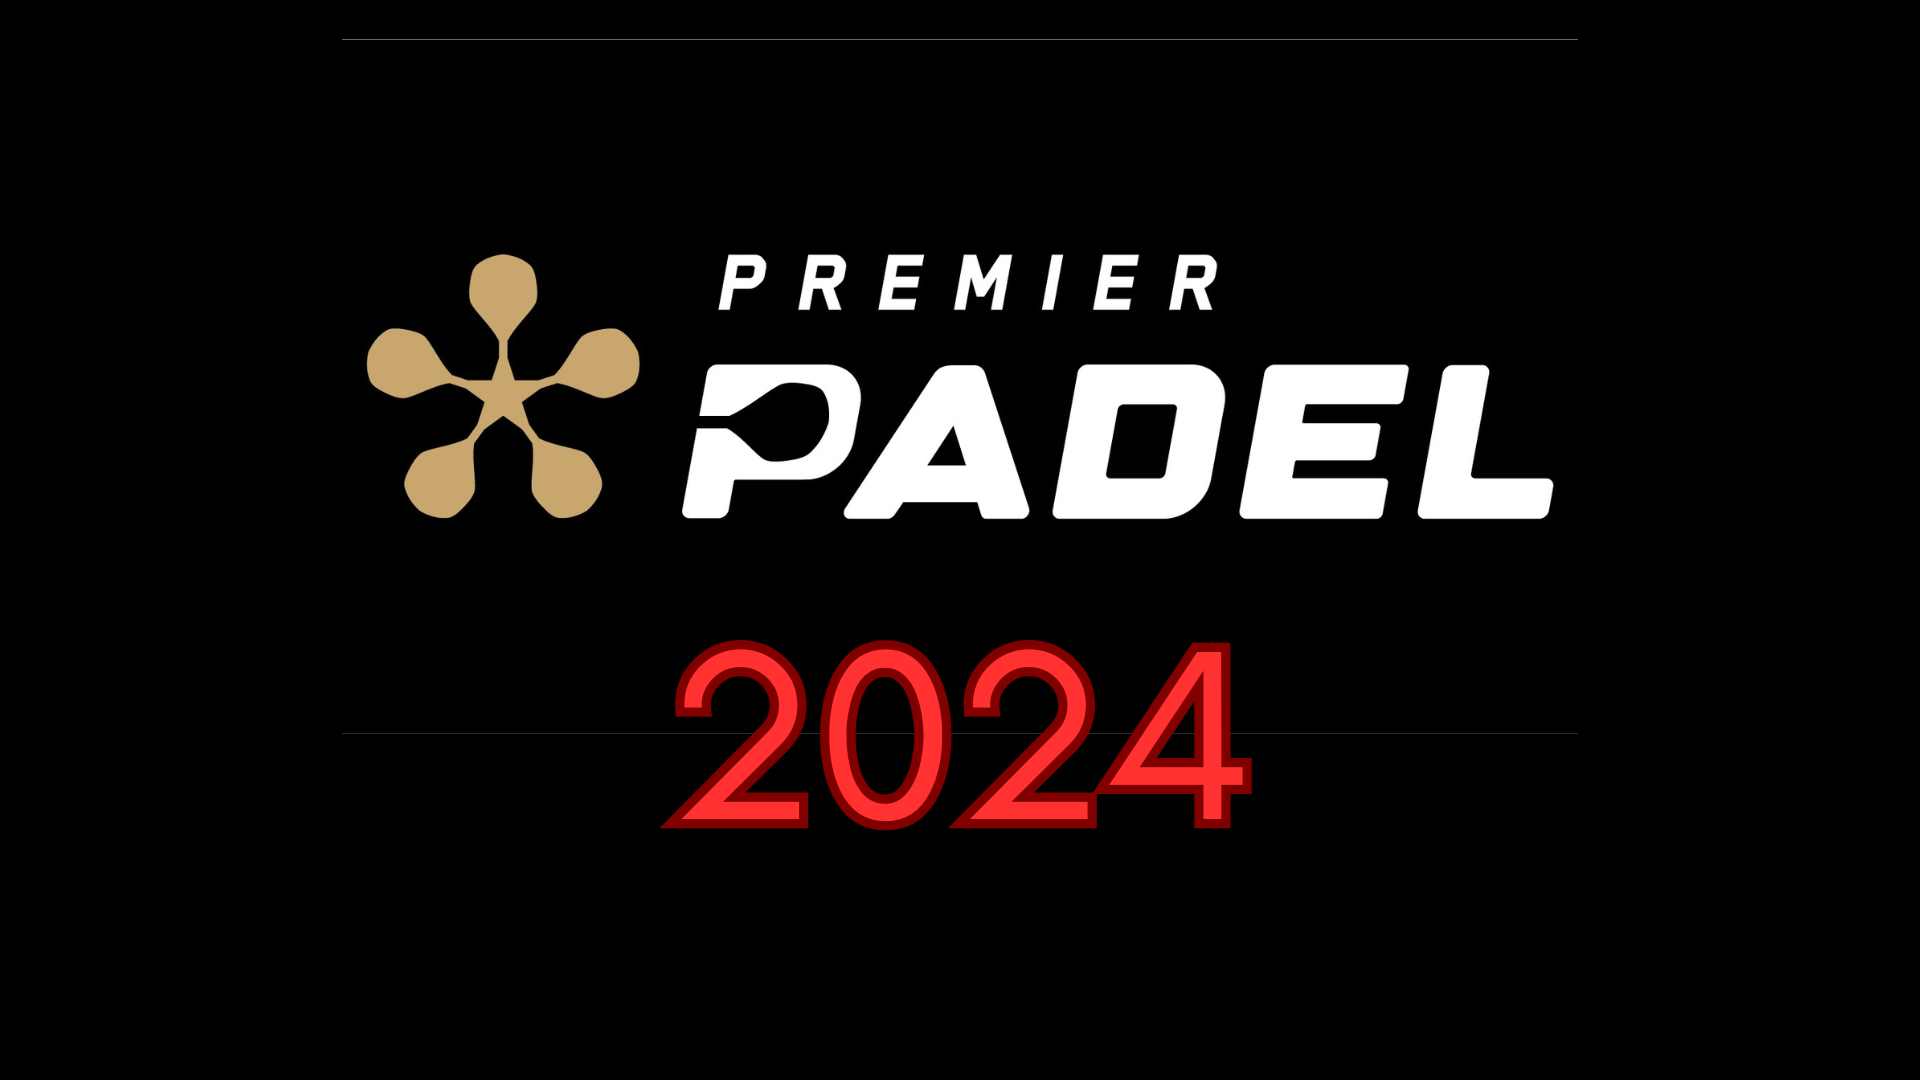 Premier Padel Logotipo de la ventana de transferencia 2024